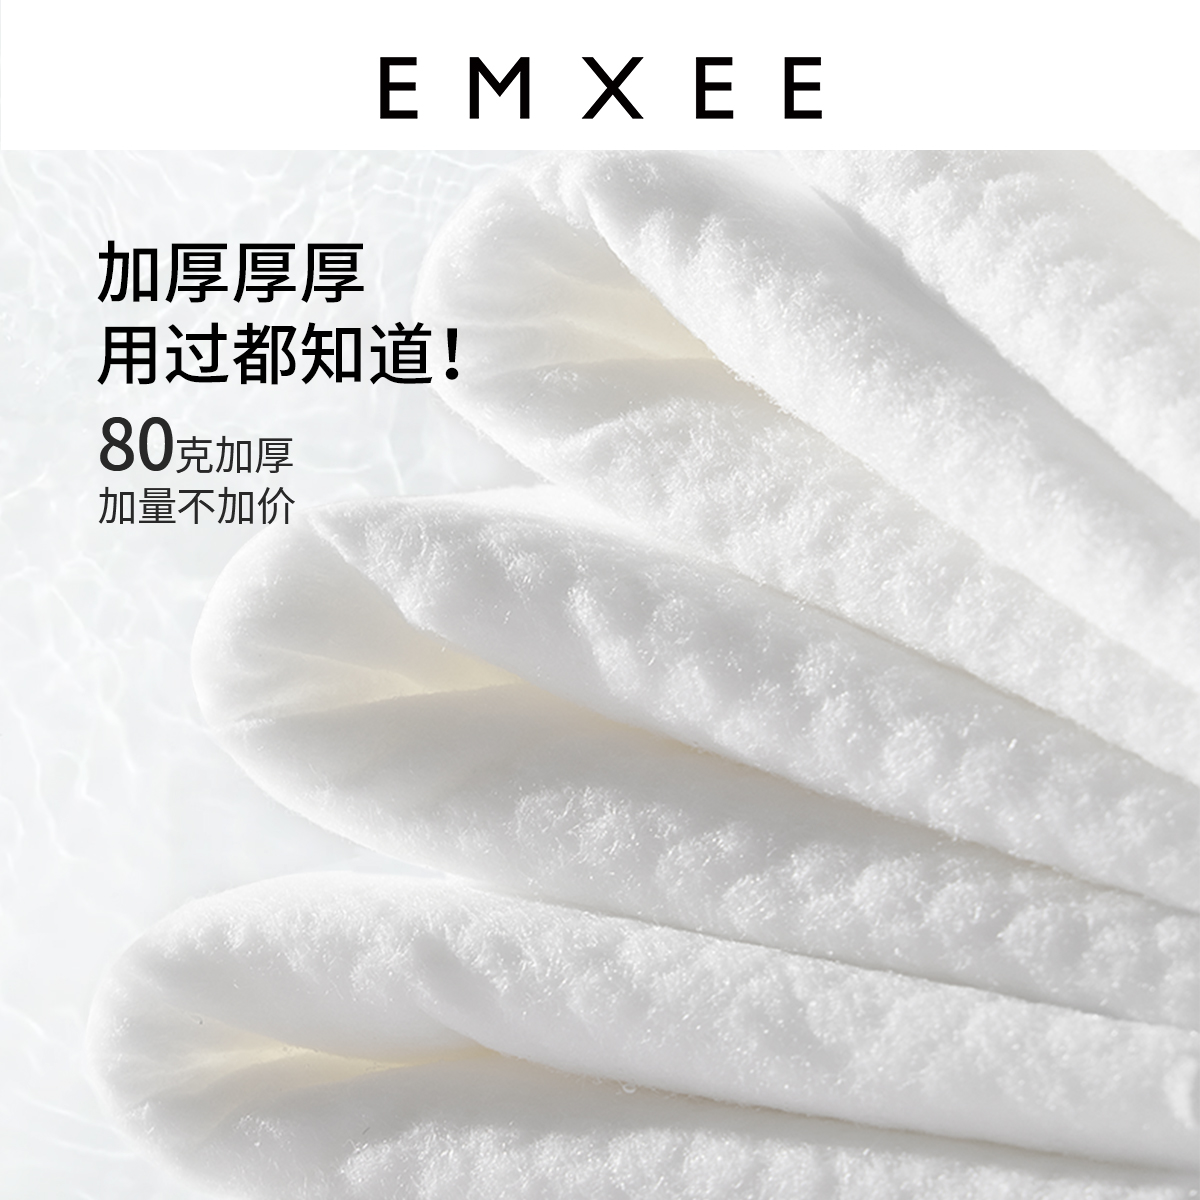 嫚熙绿贝壳湿巾纸手口专用*湿纸巾 EMXEE嫚熙湿巾